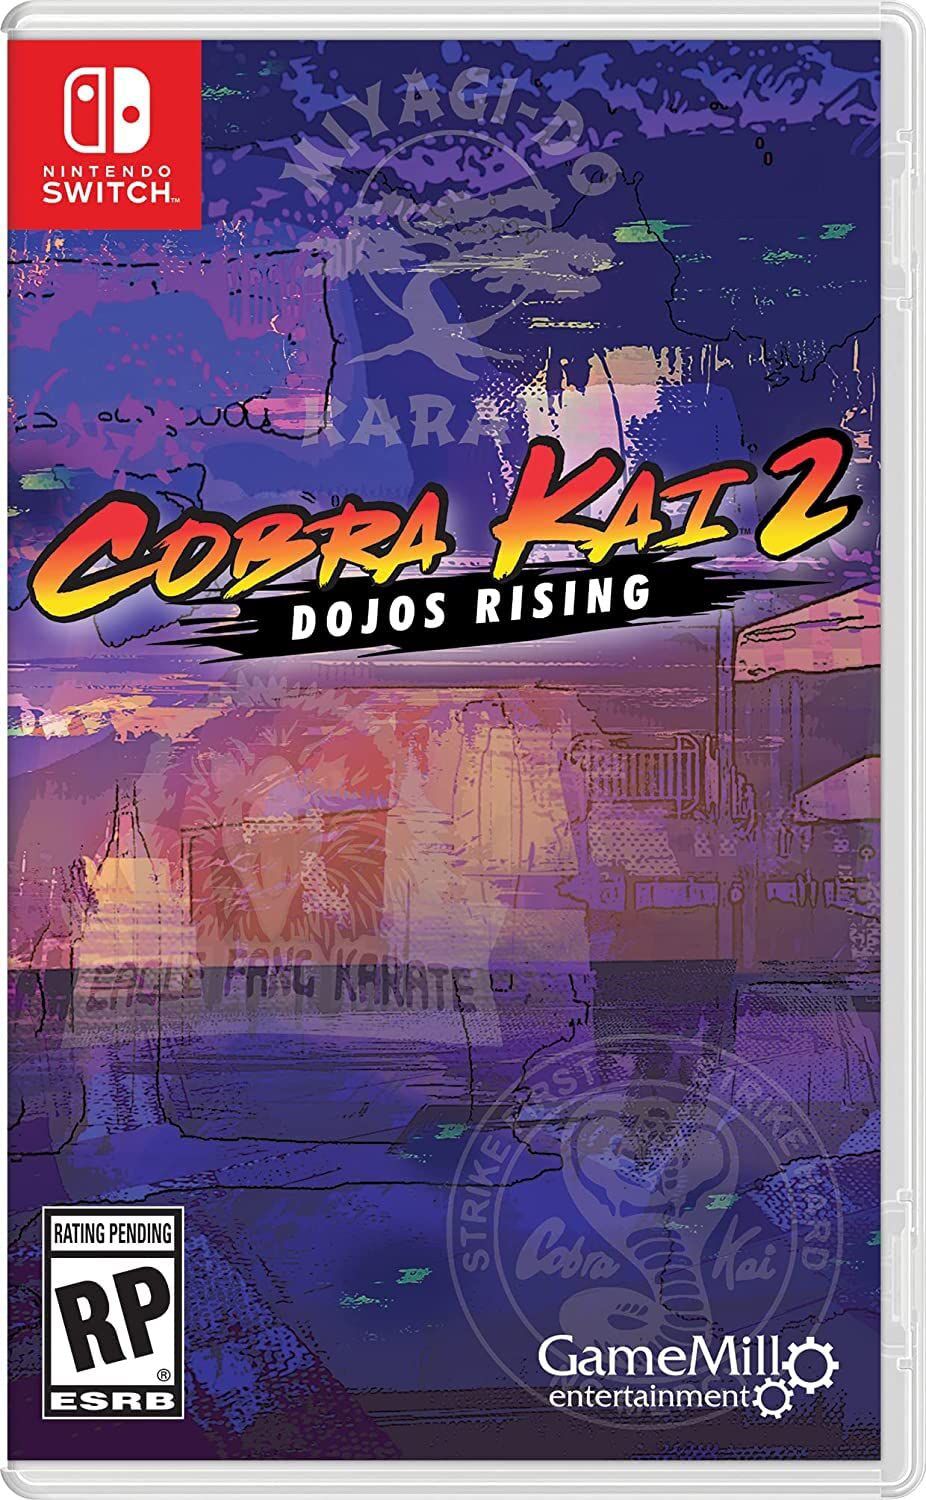 Cobra Kai 2: Dojos Rising Game Big News - Playable Characters